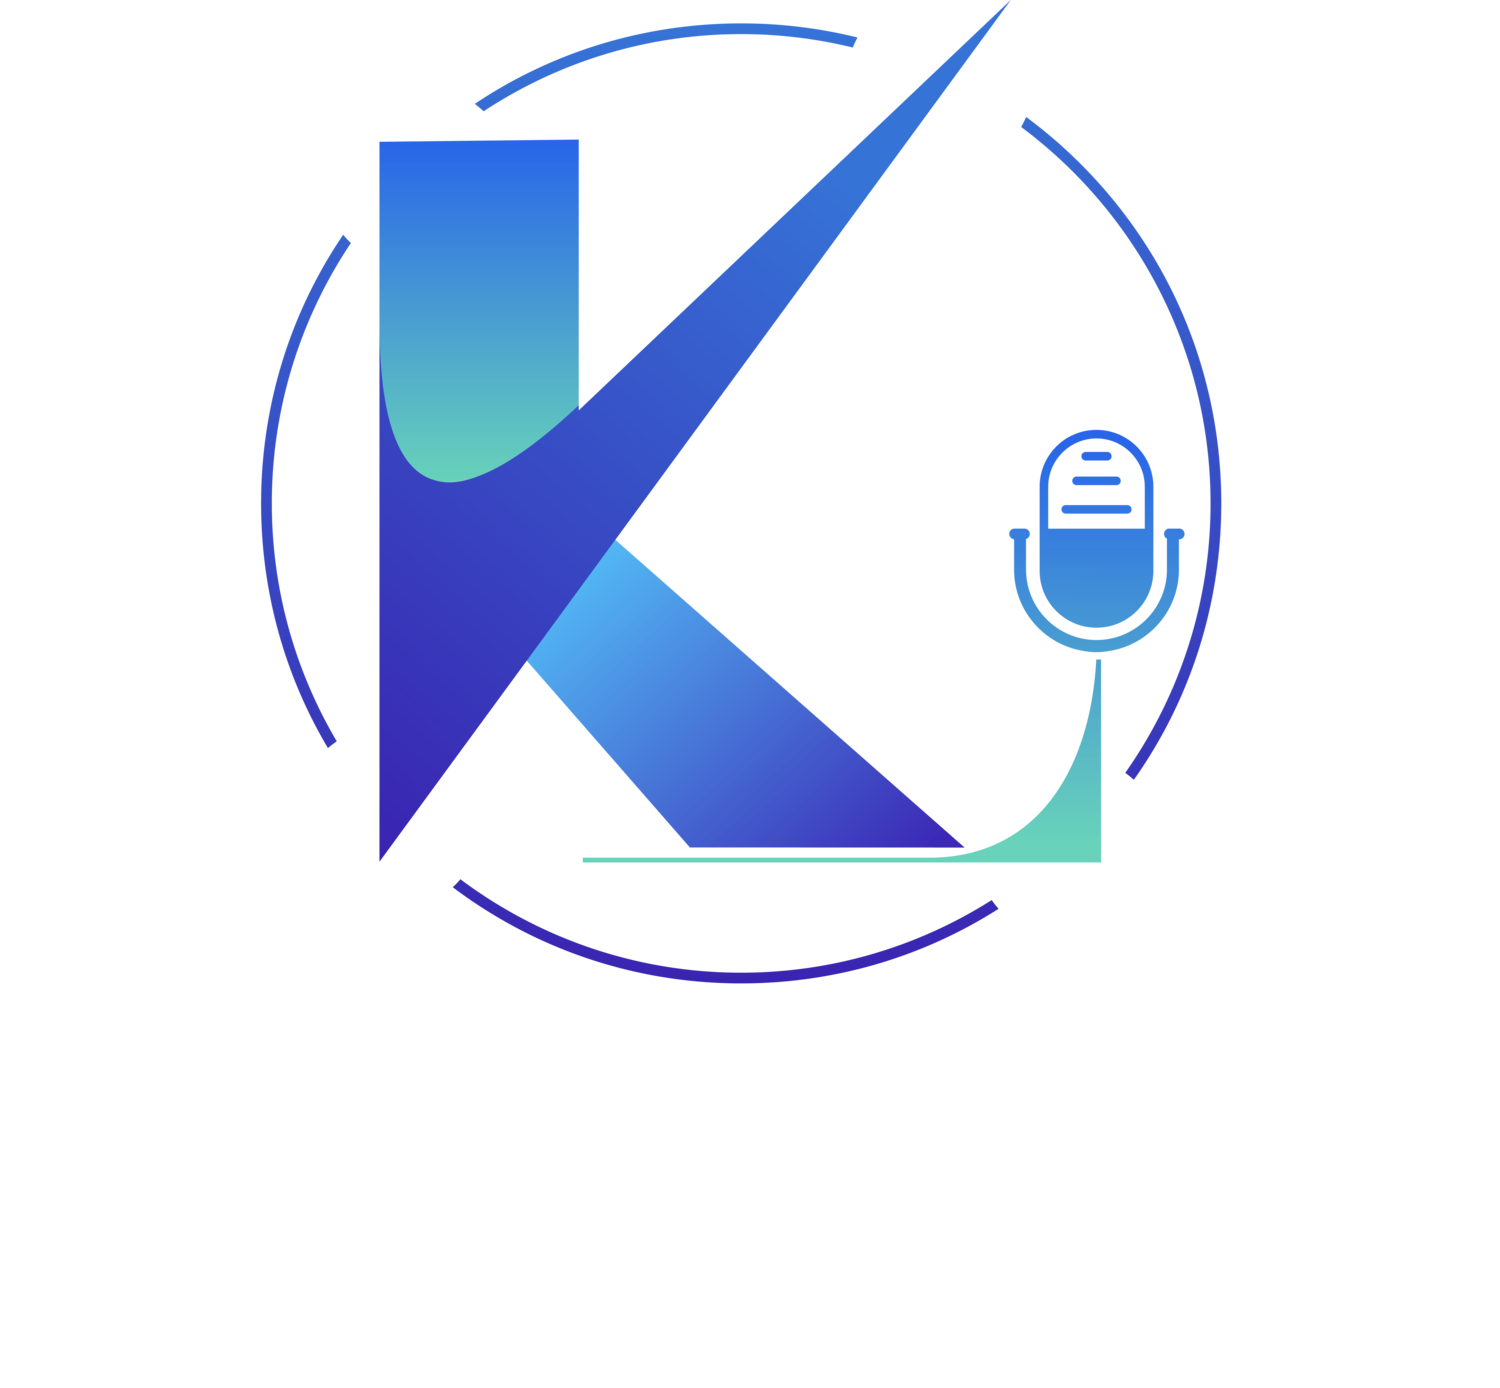 Kelly LaBrecque